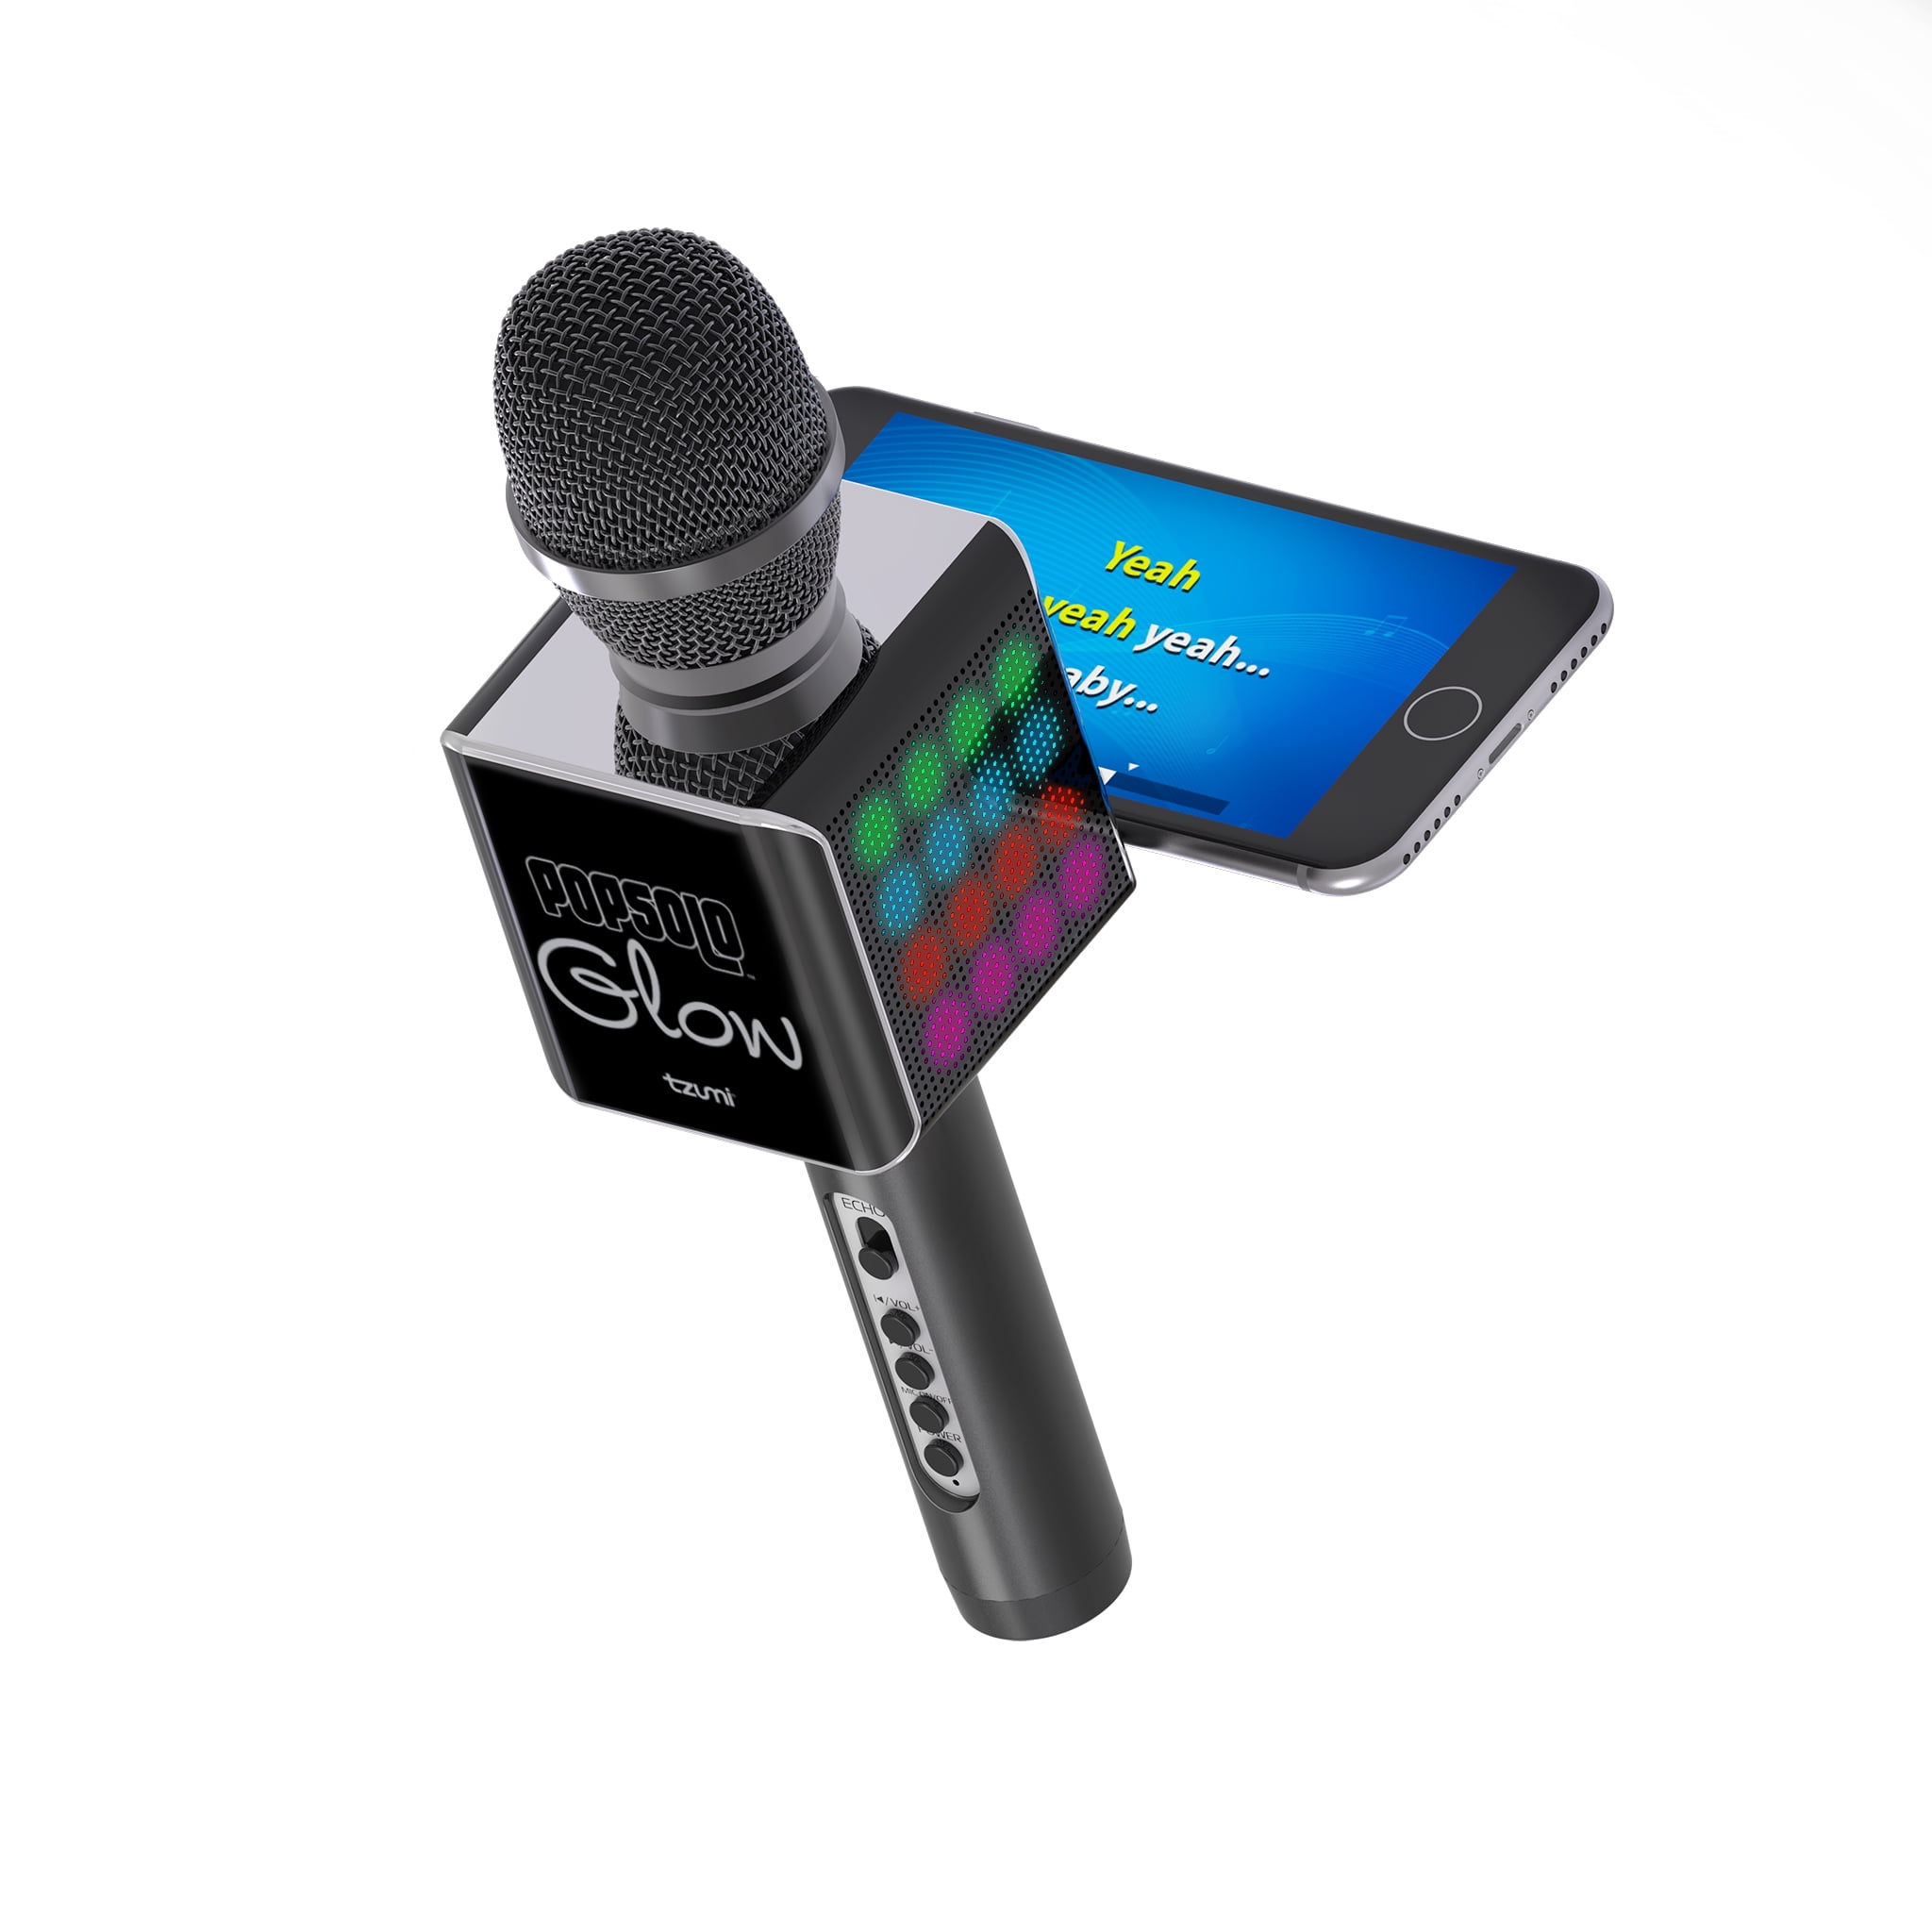 Телефон как микрофон через блютуз. Комплект микрофонов JBL Wireless Microphone Set. Комплект микрофонов JBL Wireless Microphone Set (Black). Микрофон-караоке s088 Bluetooth с динамиком черный. Караоке-микрофон Gabba goods g Wireless.